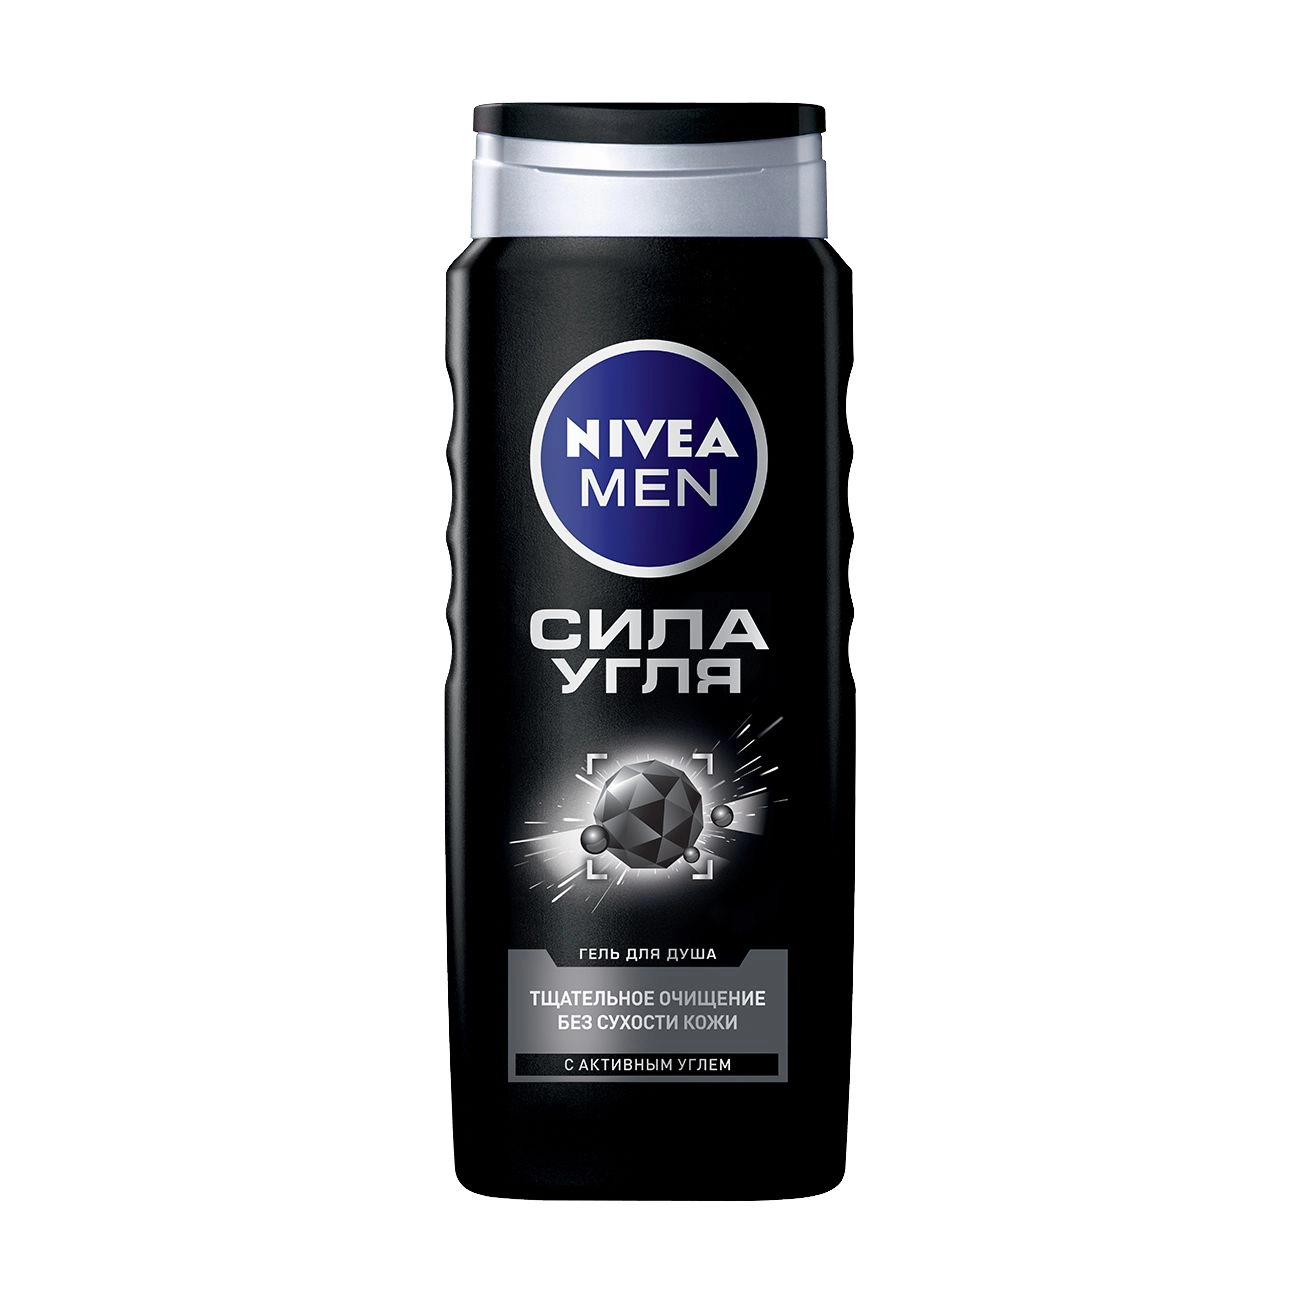 Nivea Men Мужской гель для душа Сила угля, с активированным углем, 500 мл - фото N1